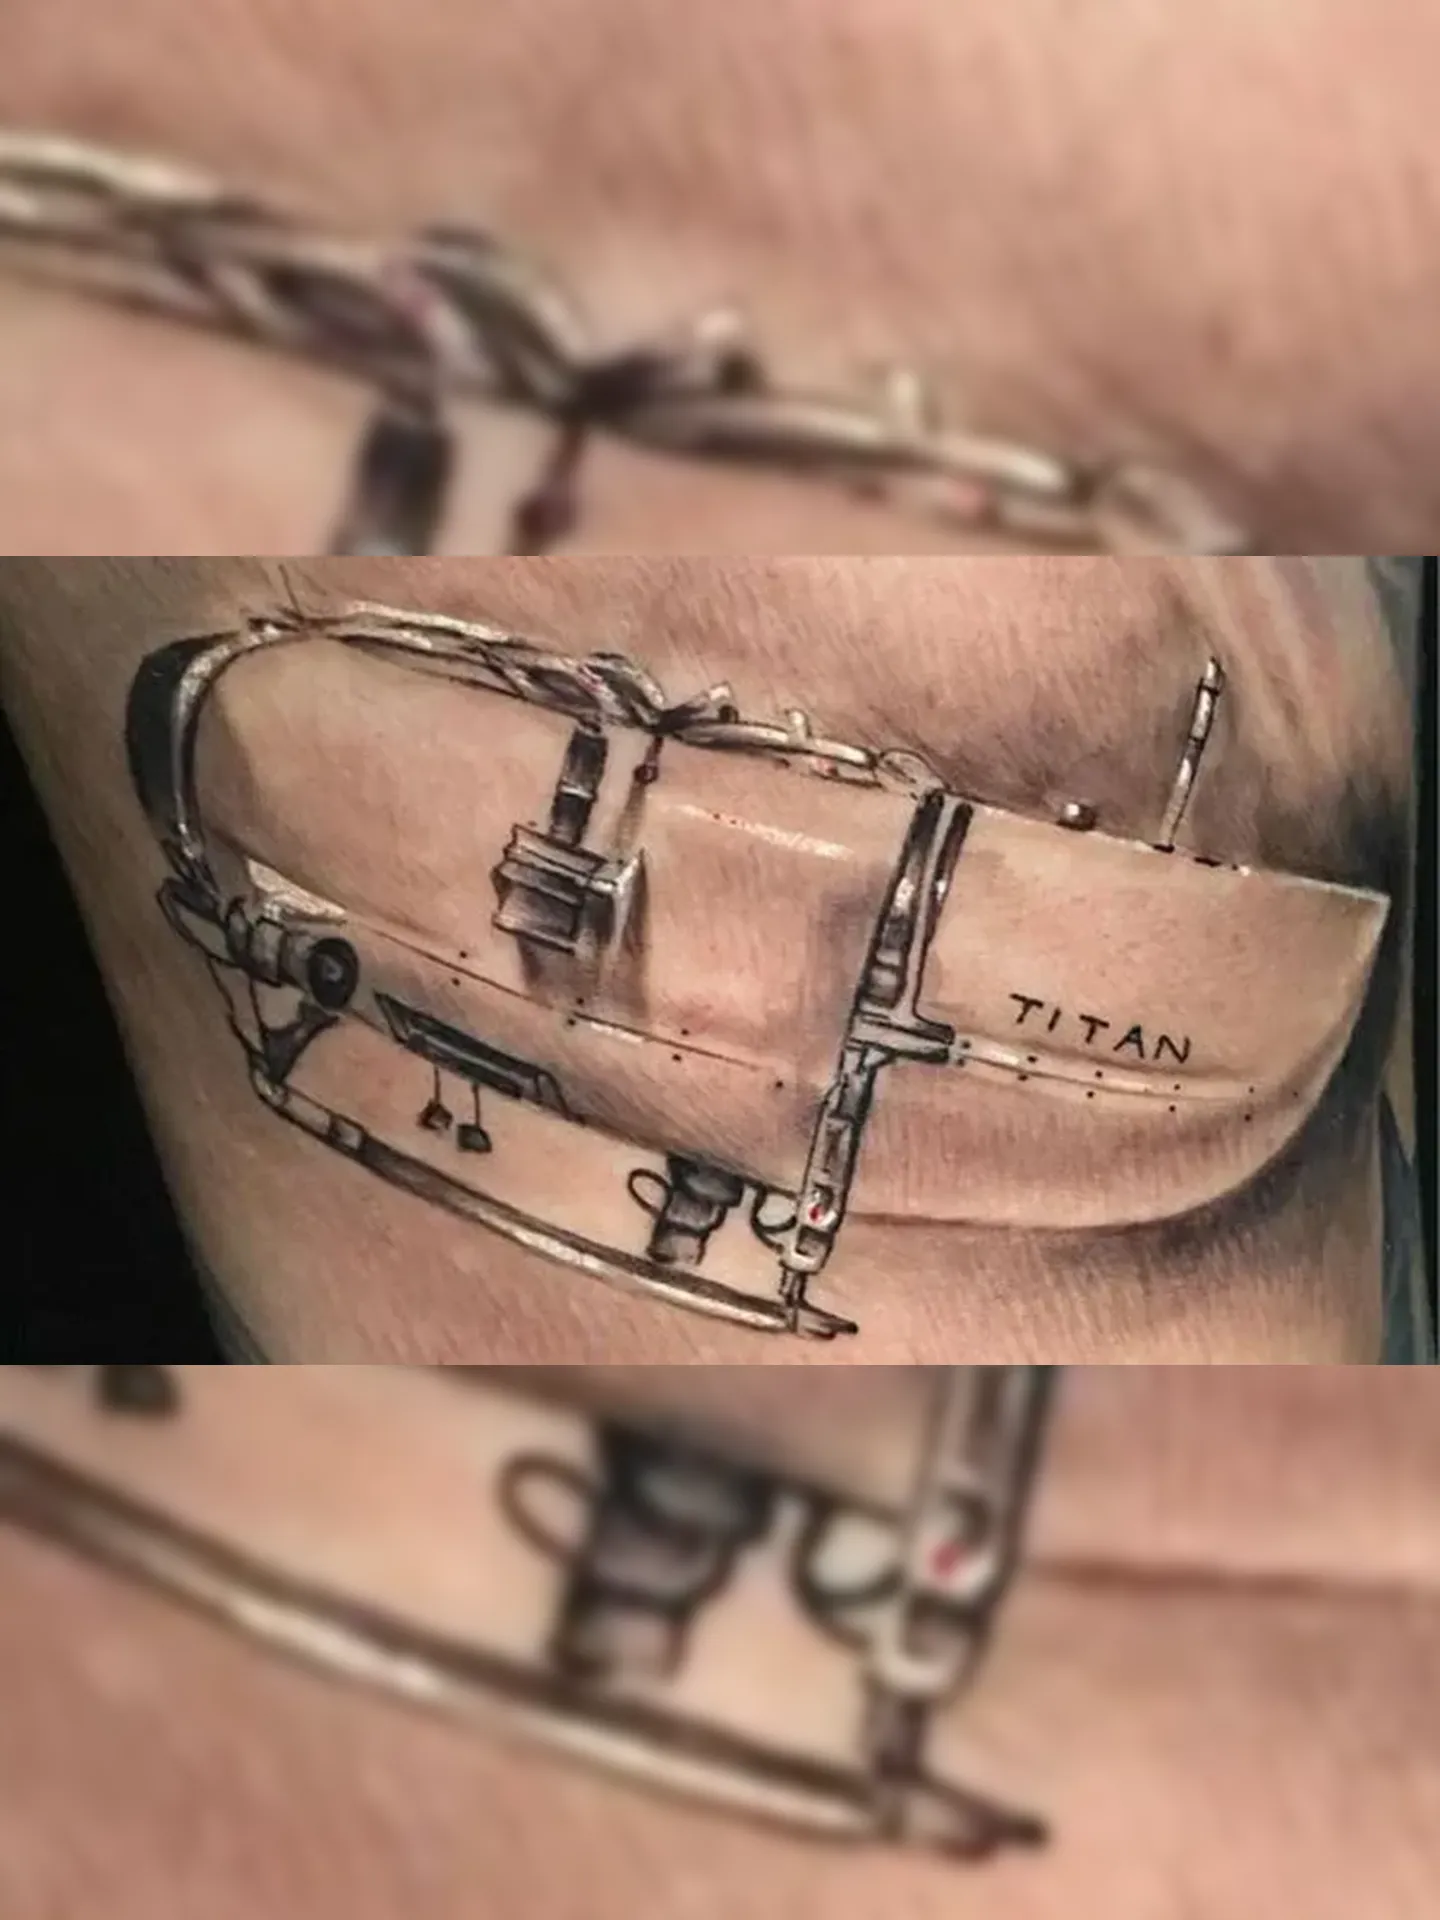 Tatuador sugeriu o desenho em homenagem ao submarino e o cliente logo topou